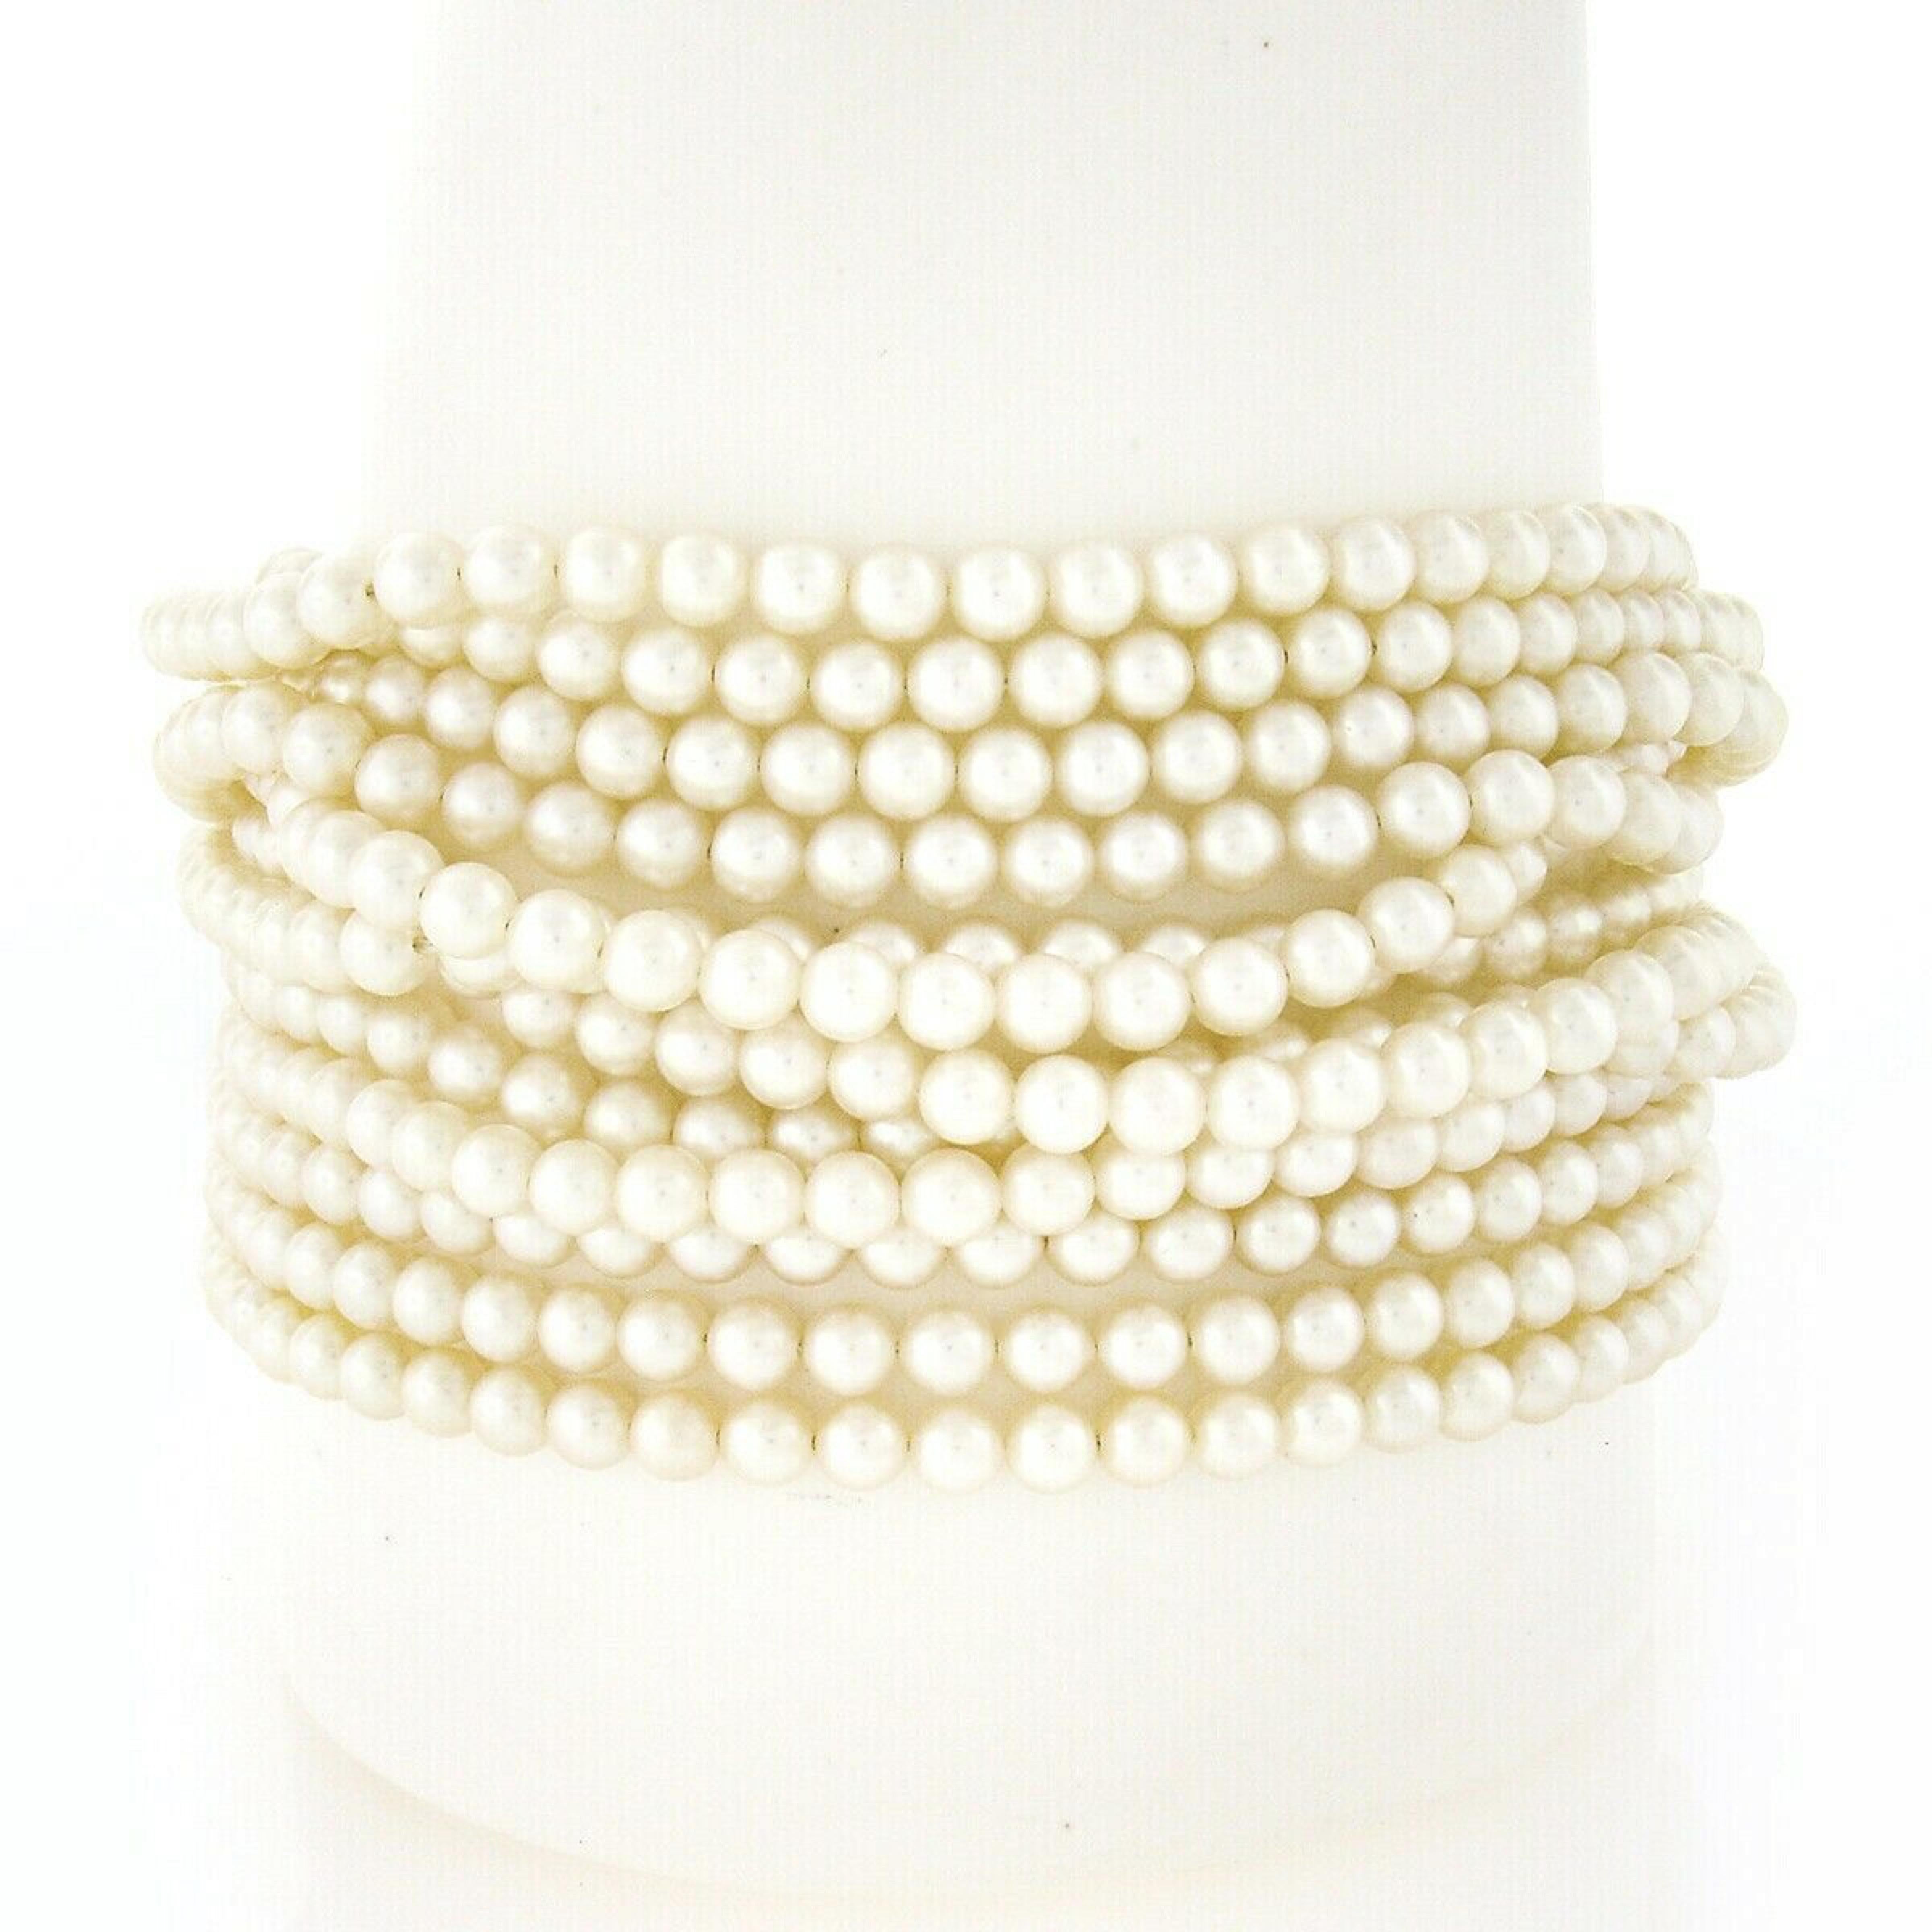 Ce magnifique bracelet vintage comporte 12 rangs de perles de culture rondes et un grand fermoir texturé en or jaune 18 carats massif. Les perles de très belle qualité sont bien assorties en taille et de belle couleur blanche, et sont absolument